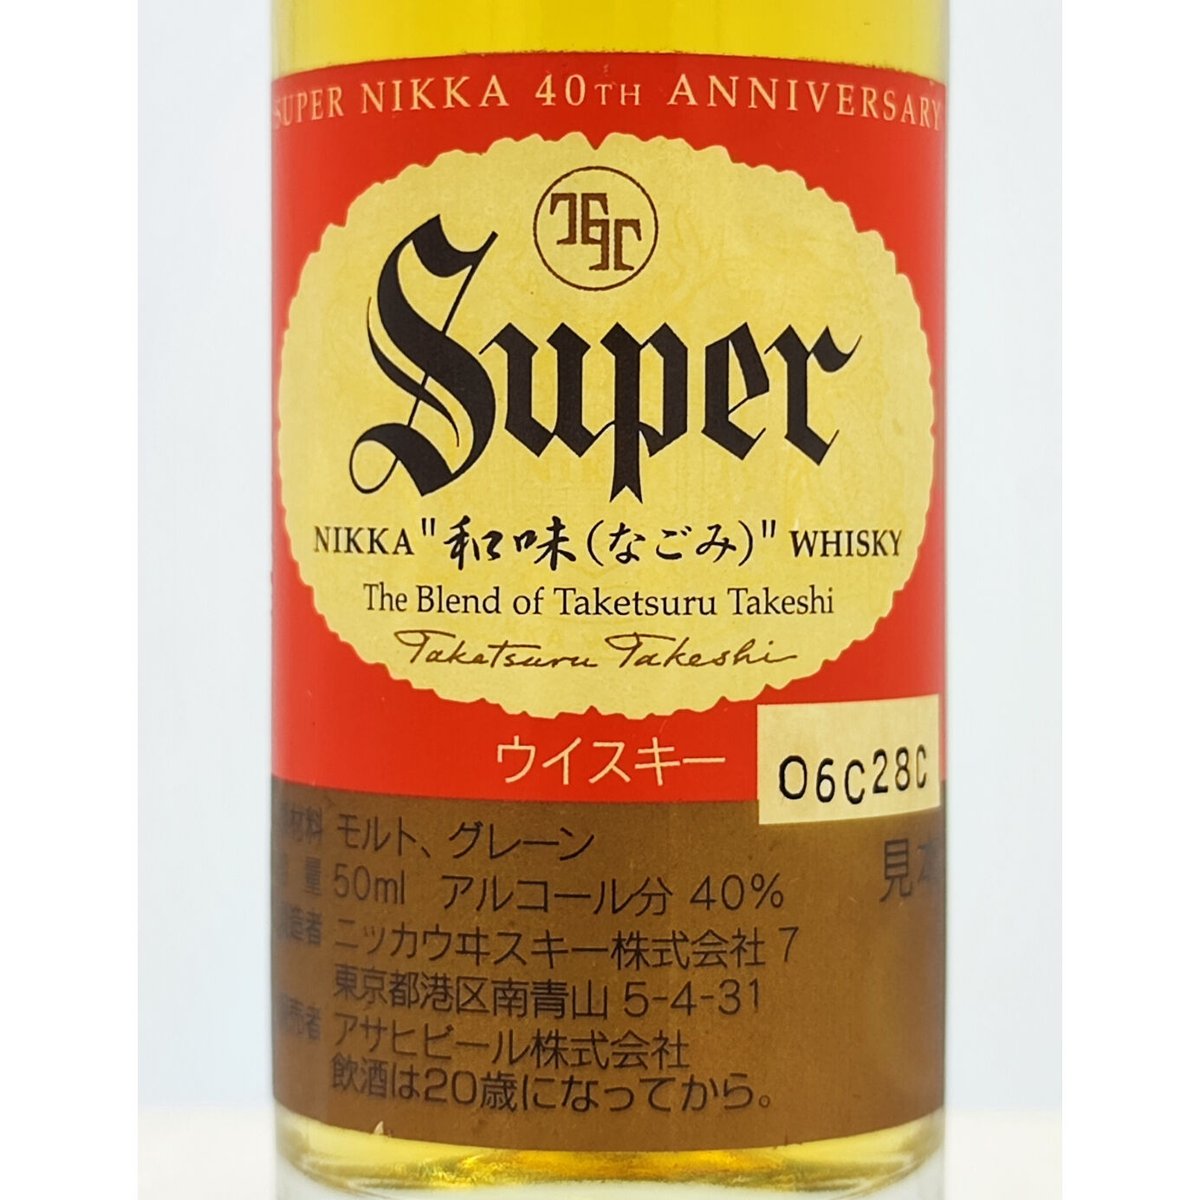 スーパーニッカ 発売40周年記念「和味-なごみ‐」Super NIKKA WHISKY 40t...